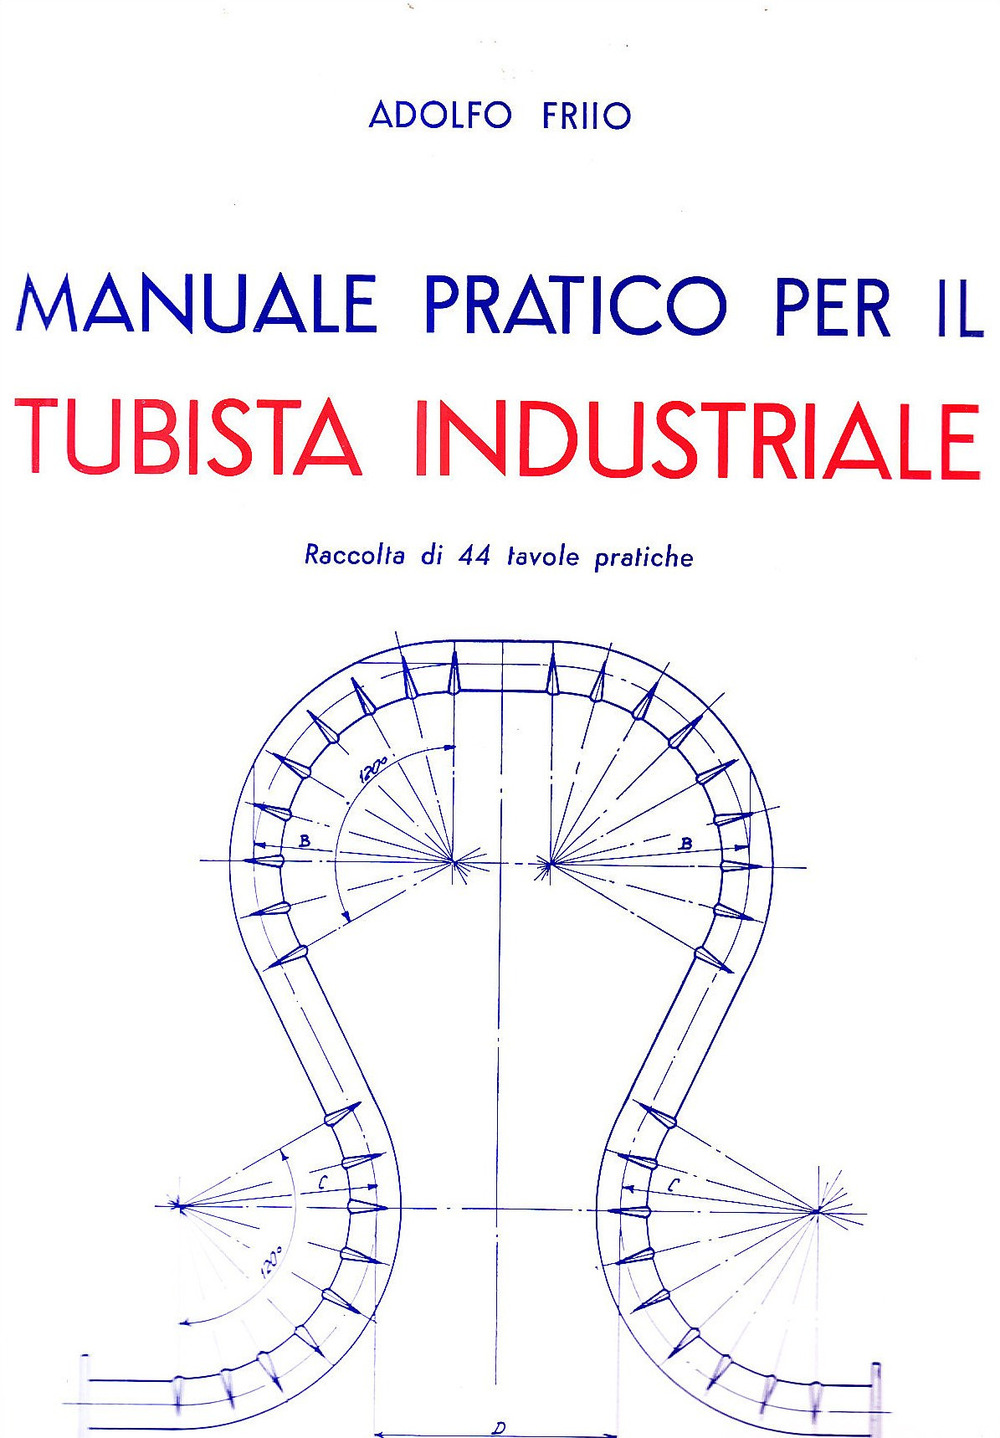 Manuale pratico per il tubista industriale - Friio A. - 第 1/1 張圖片